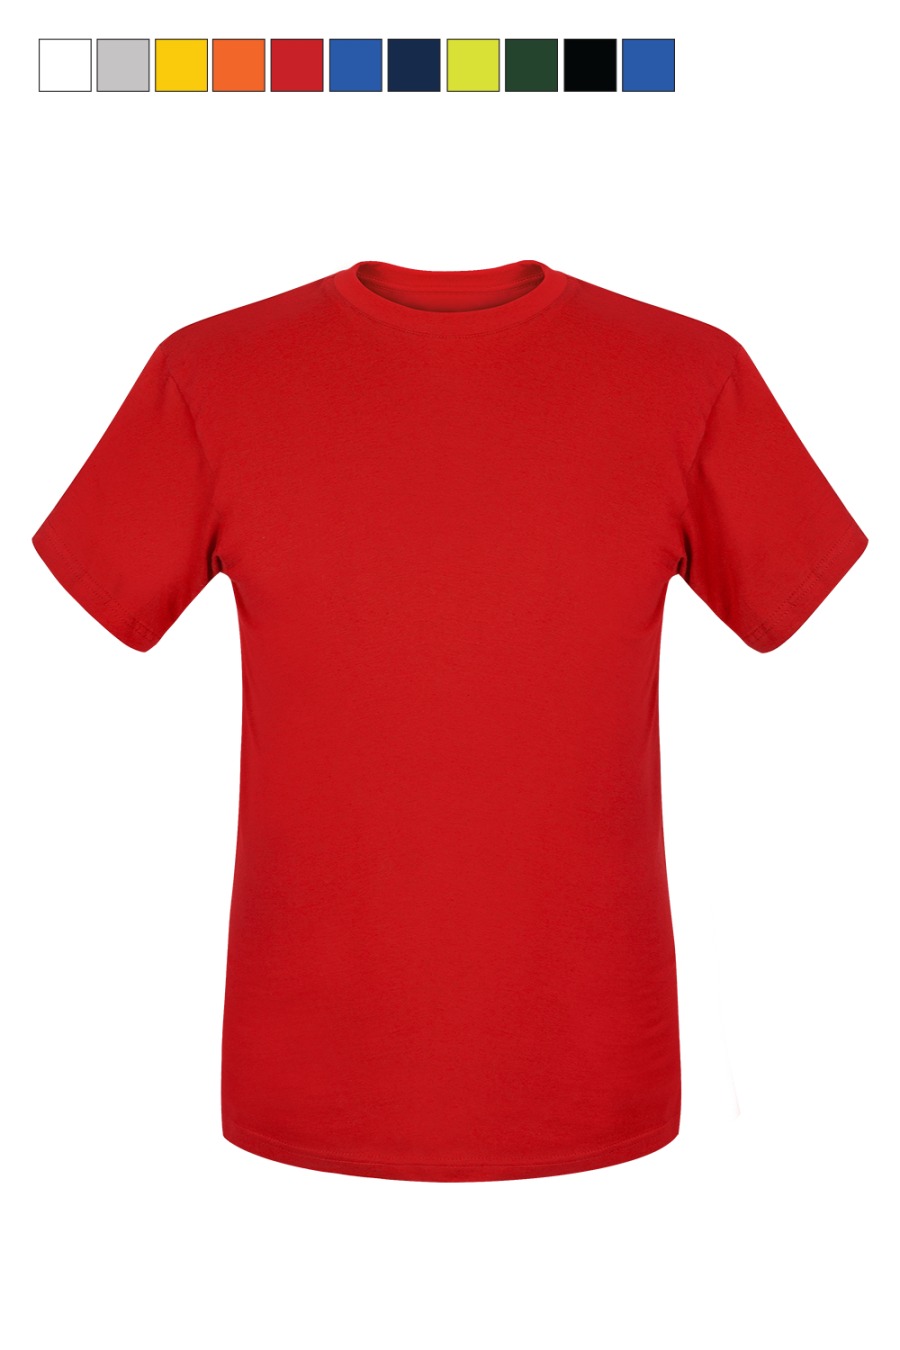 tshirt-czerwony-1.png